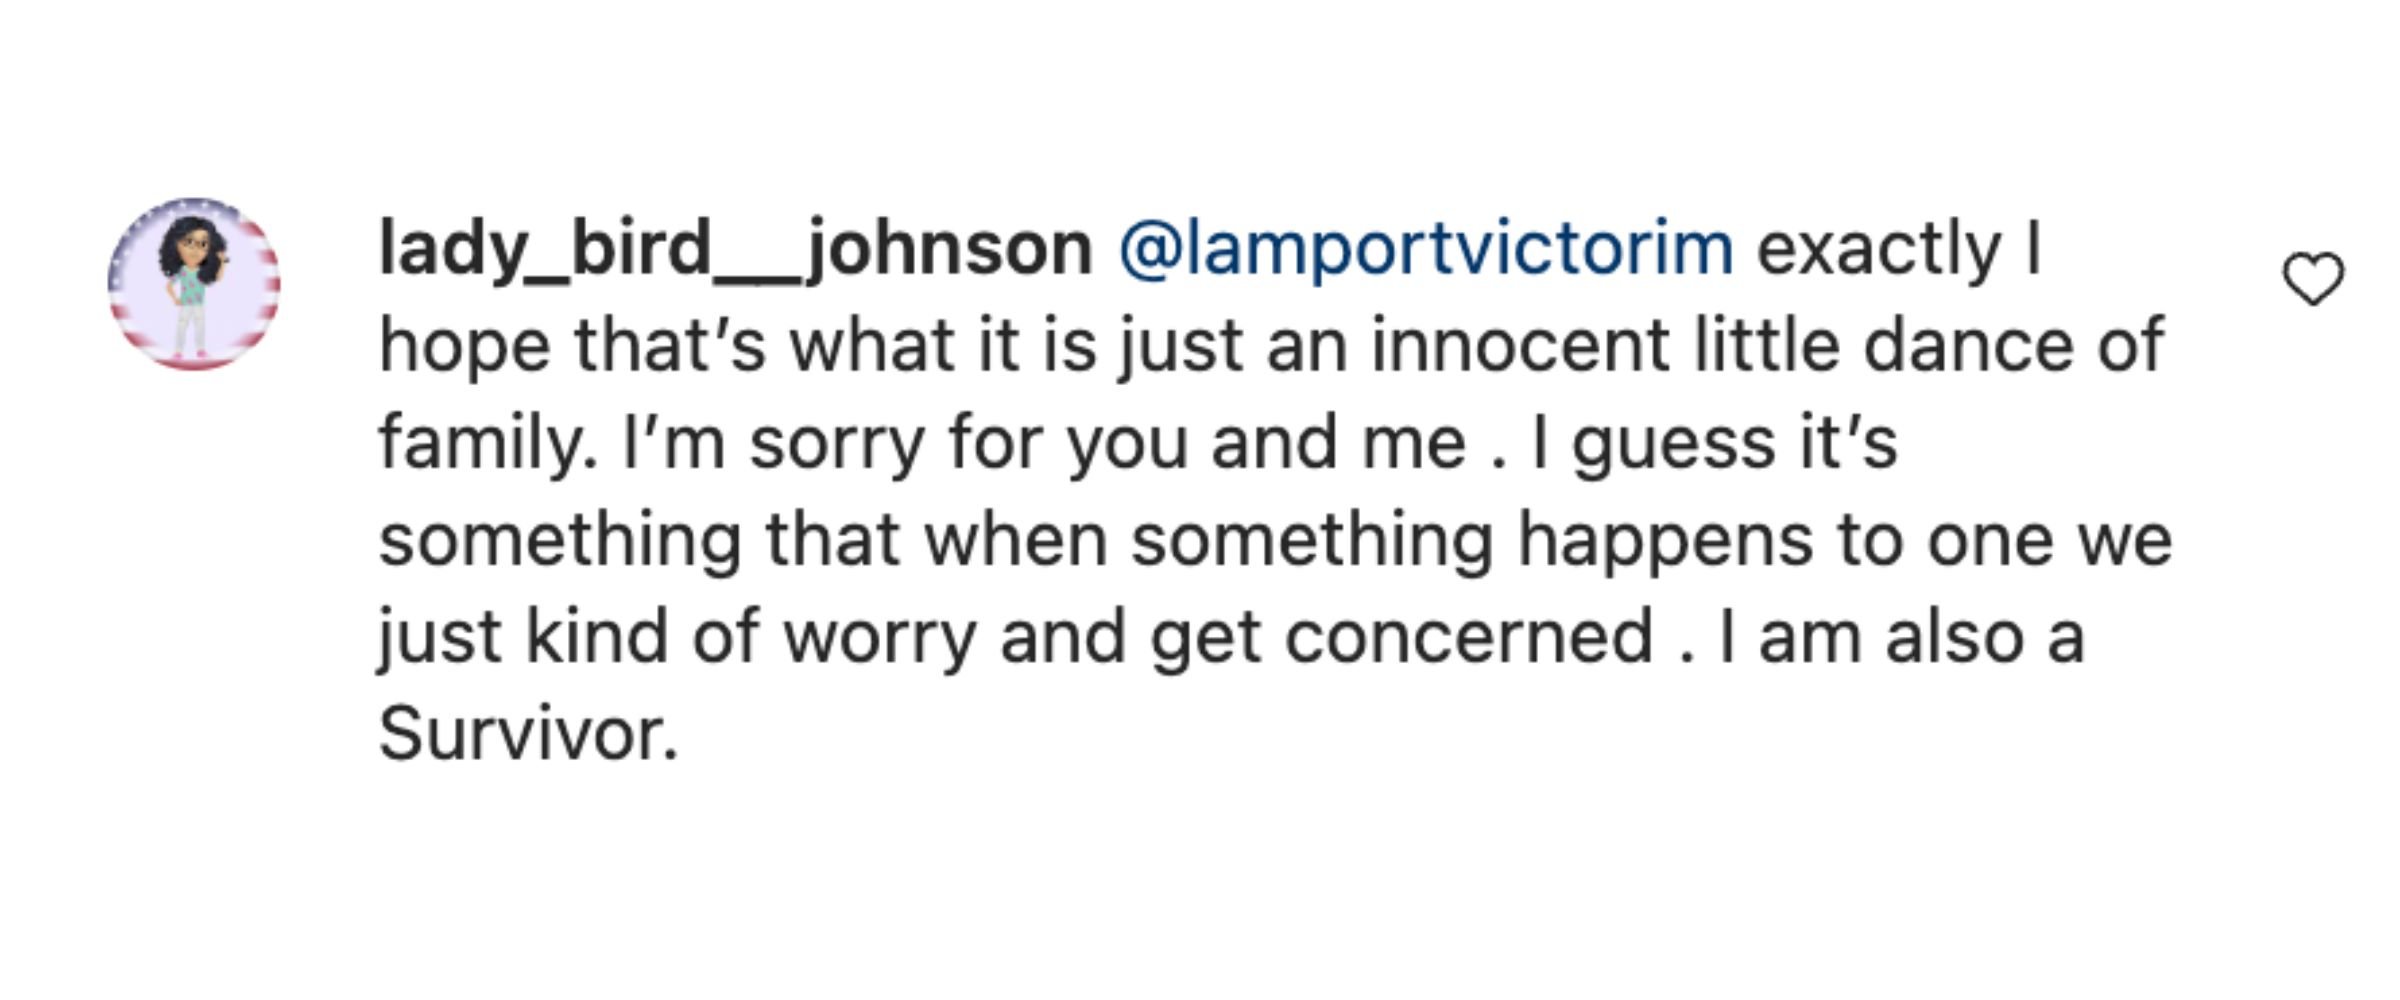 A fan’s comment on Catherine Zeta Jones’ Instagram post | Source: Instagram/Catherinezetajones